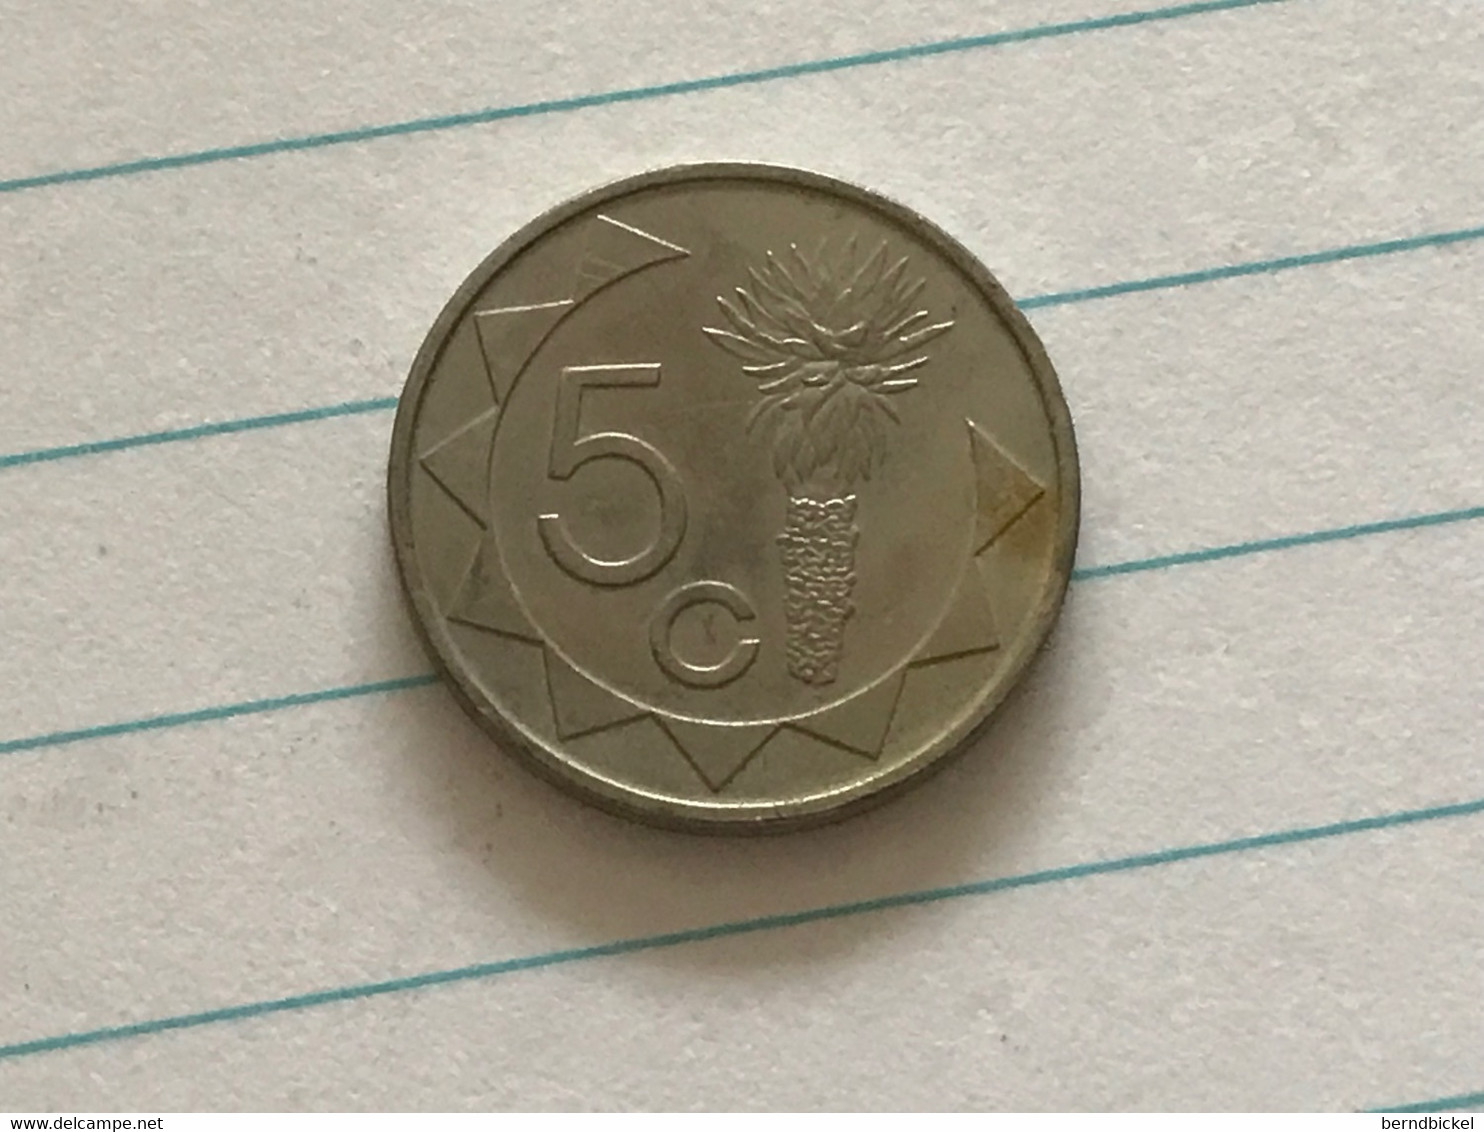 Münze Münzen Umlaufmünze Namibia 5 Cents 2007 - Namibia